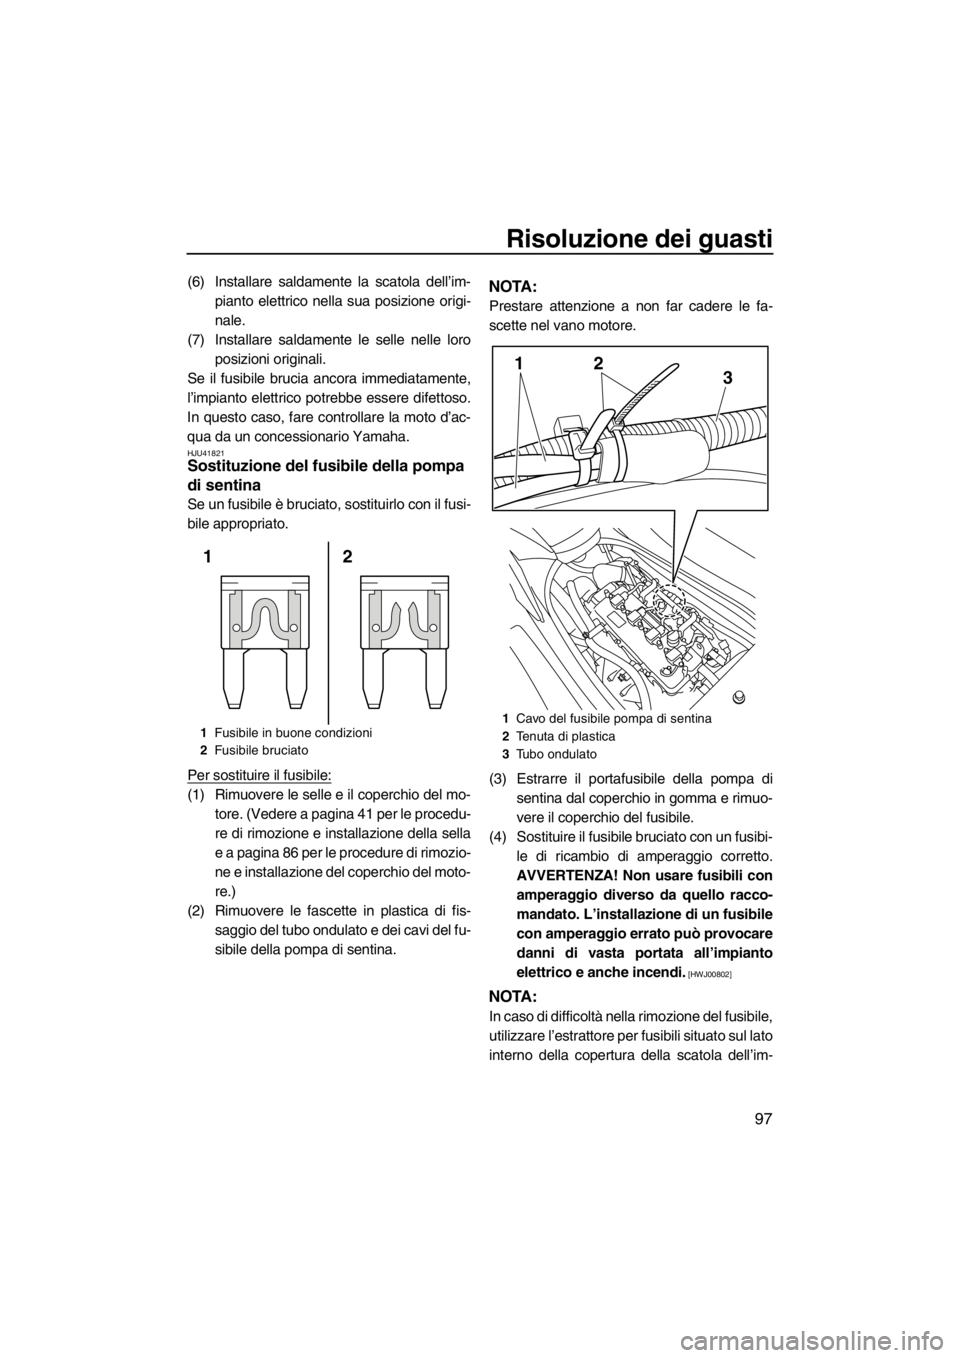 YAMAHA FZR 2012  Manuale duso (in Italian) Risoluzione dei guasti
97
(6) Installare saldamente la scatola dell’im-
pianto elettrico nella sua posizione origi-
nale.
(7) Installare saldamente le selle nelle loro
posizioni originali.
Se il fus